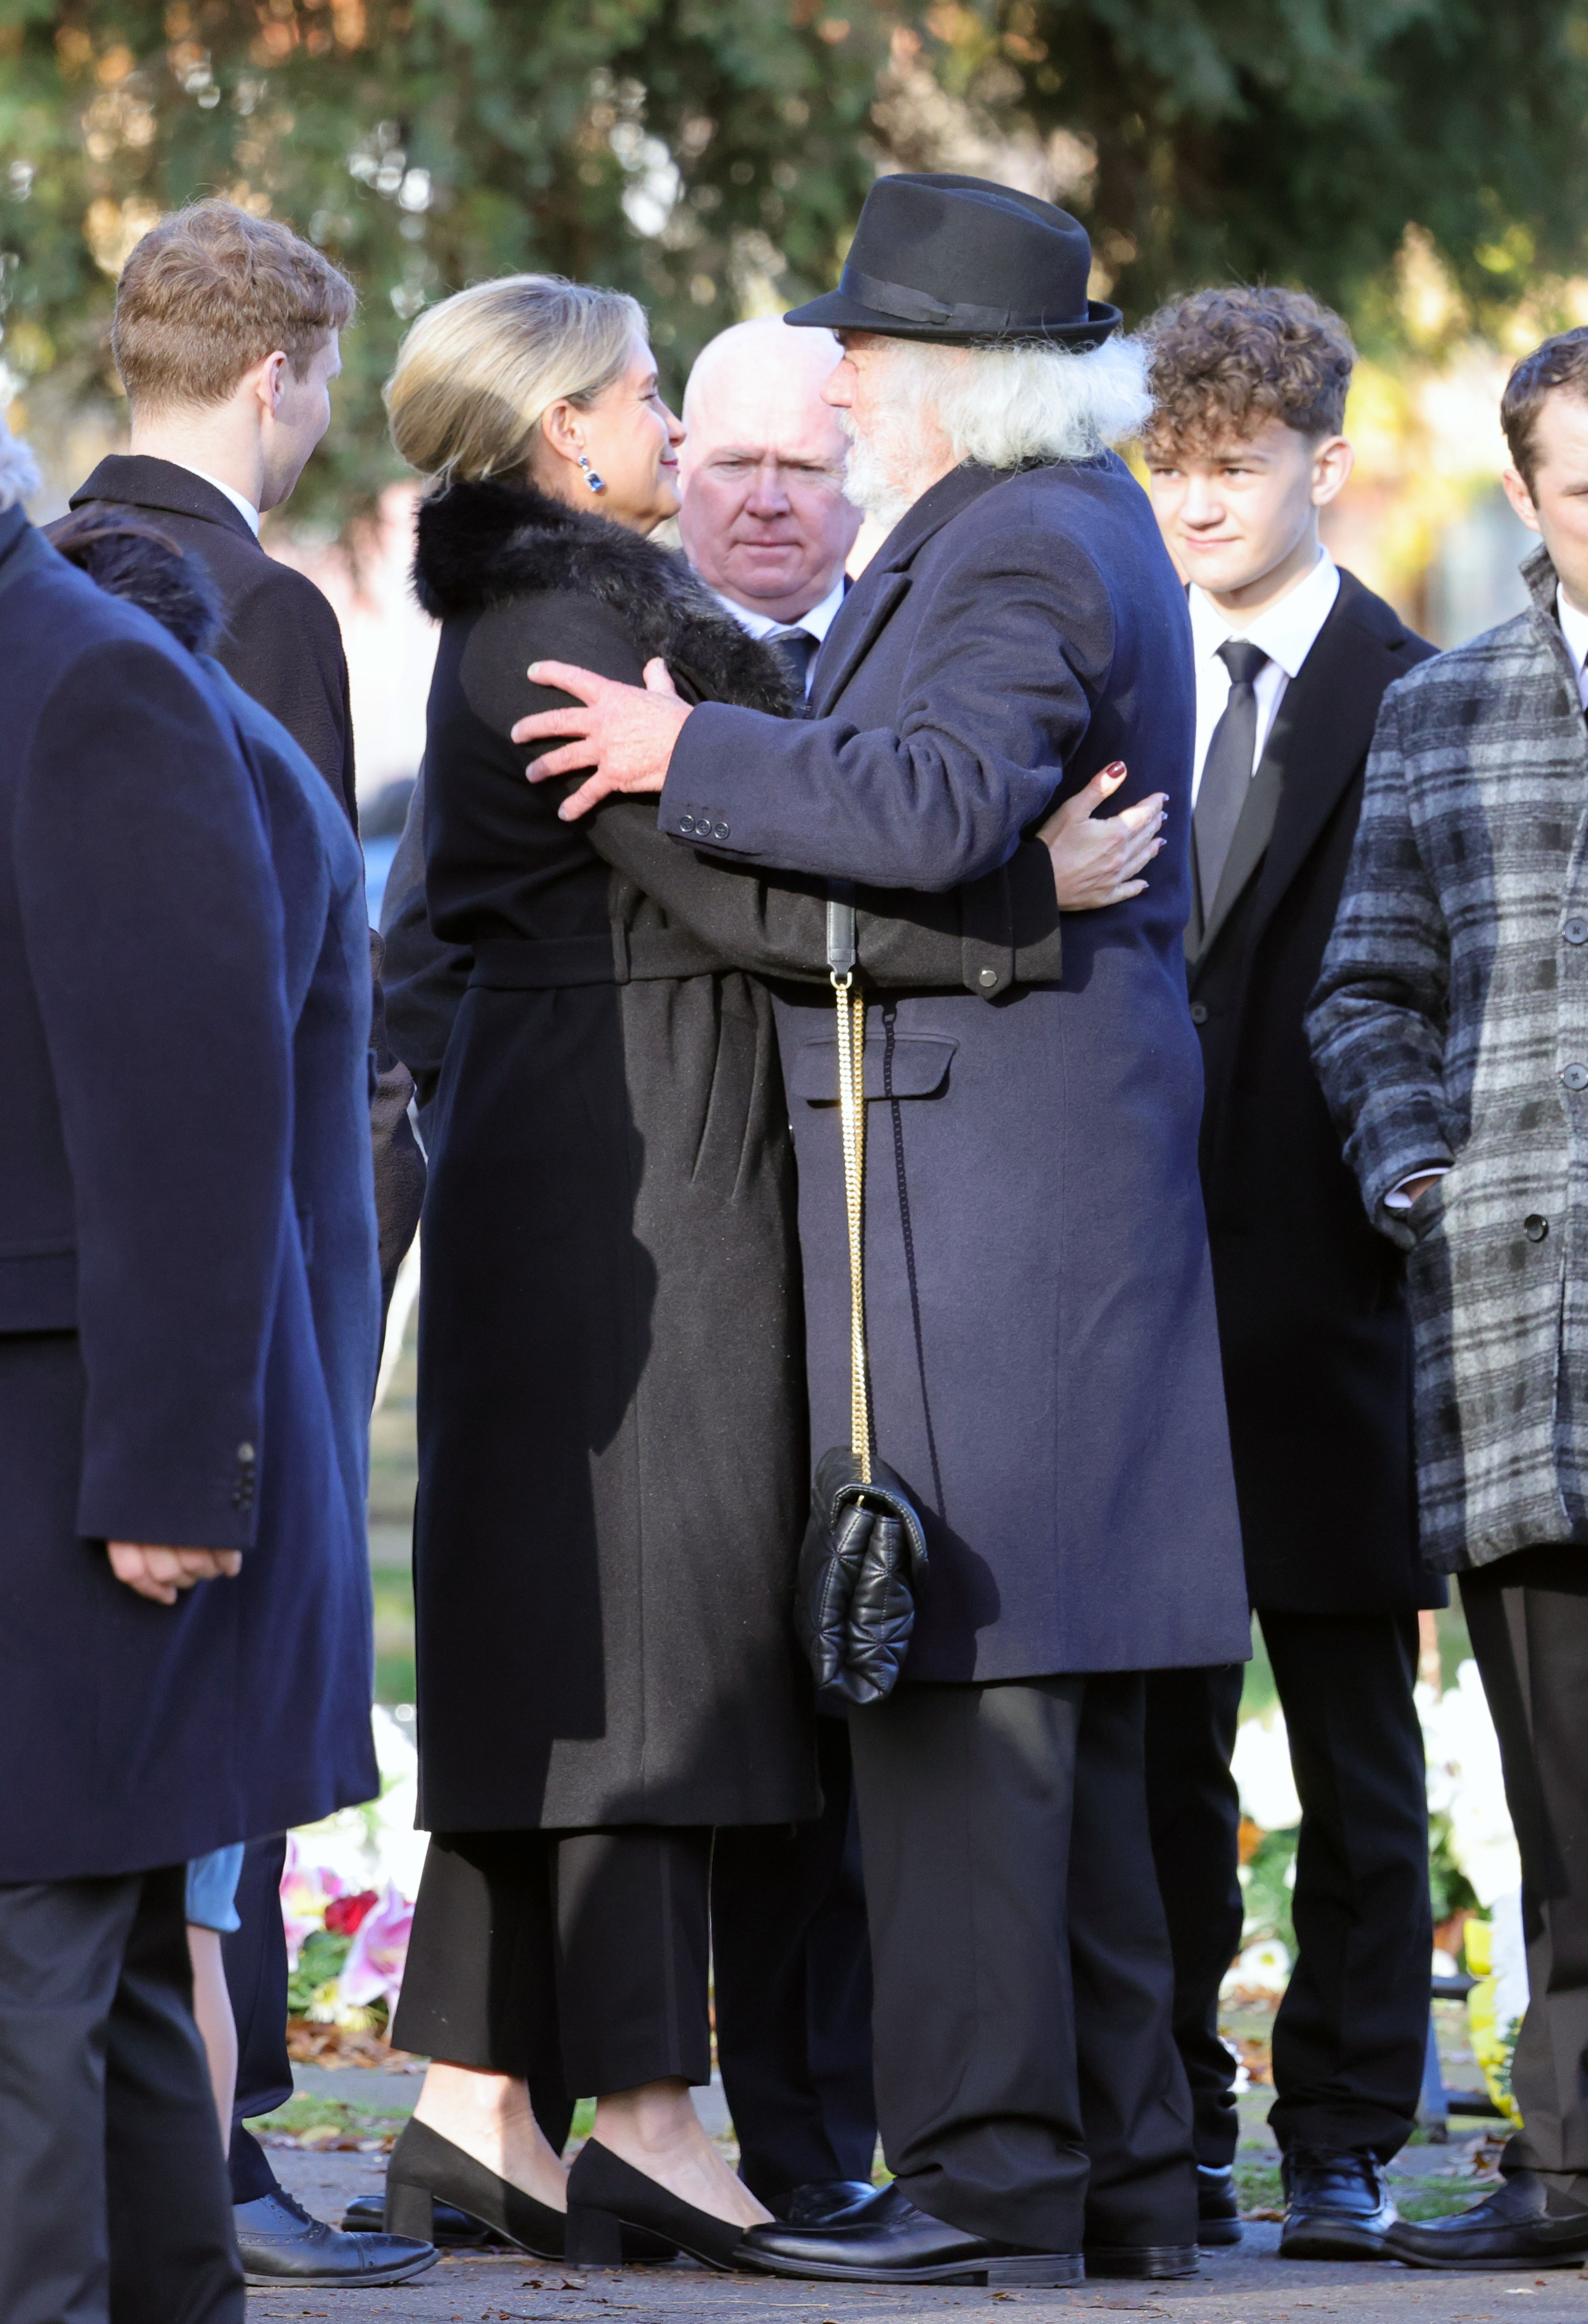 Kim Medcalf, die in der BBC-Soap Sam Mitchell spielt, umarmt einen anderen Beerdigungsteilnehmer